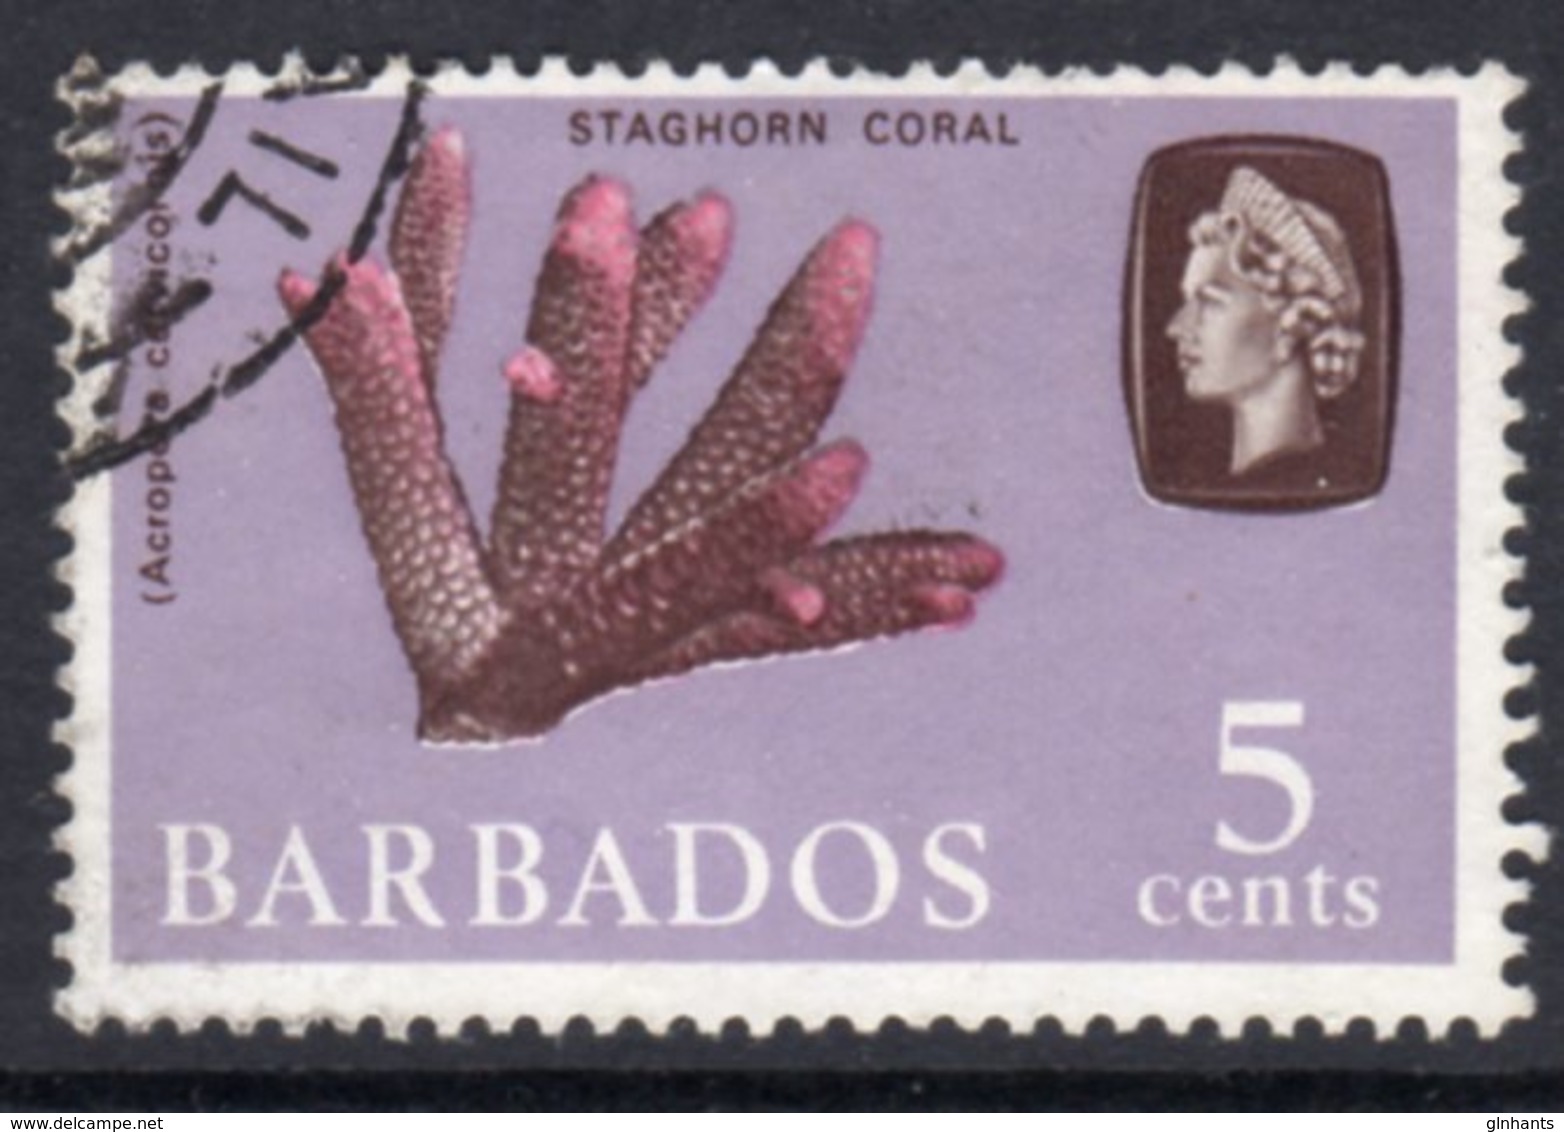 BARBADOS - 1966 5c DEFINITIVE STAMP WMK W12 SIDEWAYS REF G USED SG 346 - Barbados (...-1966)